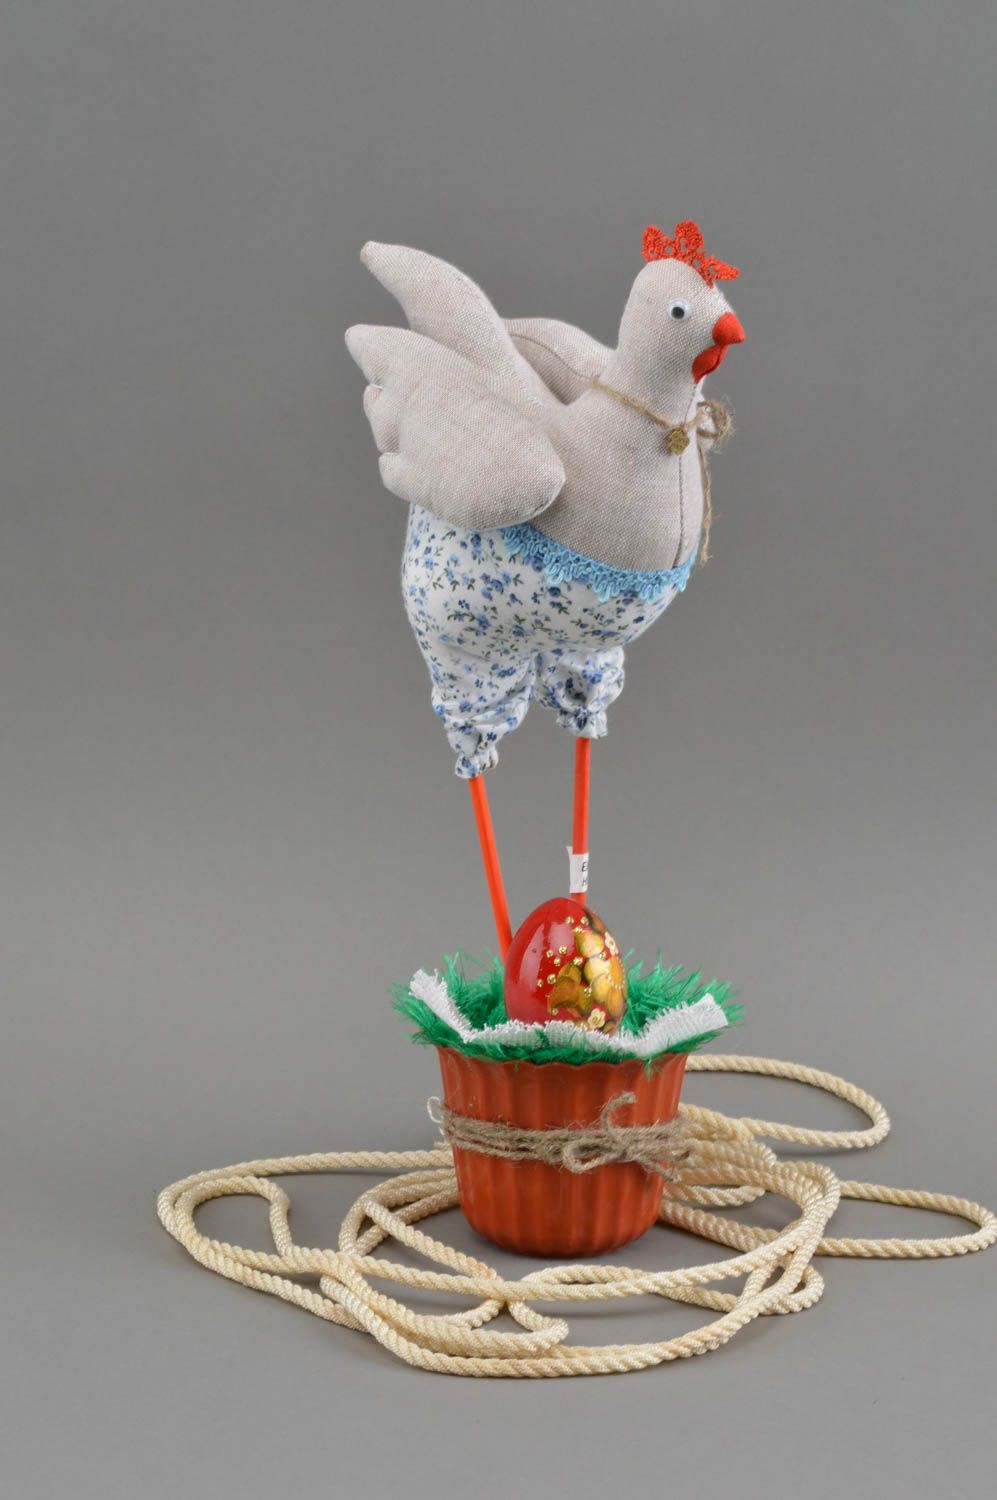 Интерьерная игрушка в виде курицы с расписным яичком ручной работы пасхальная фото 1